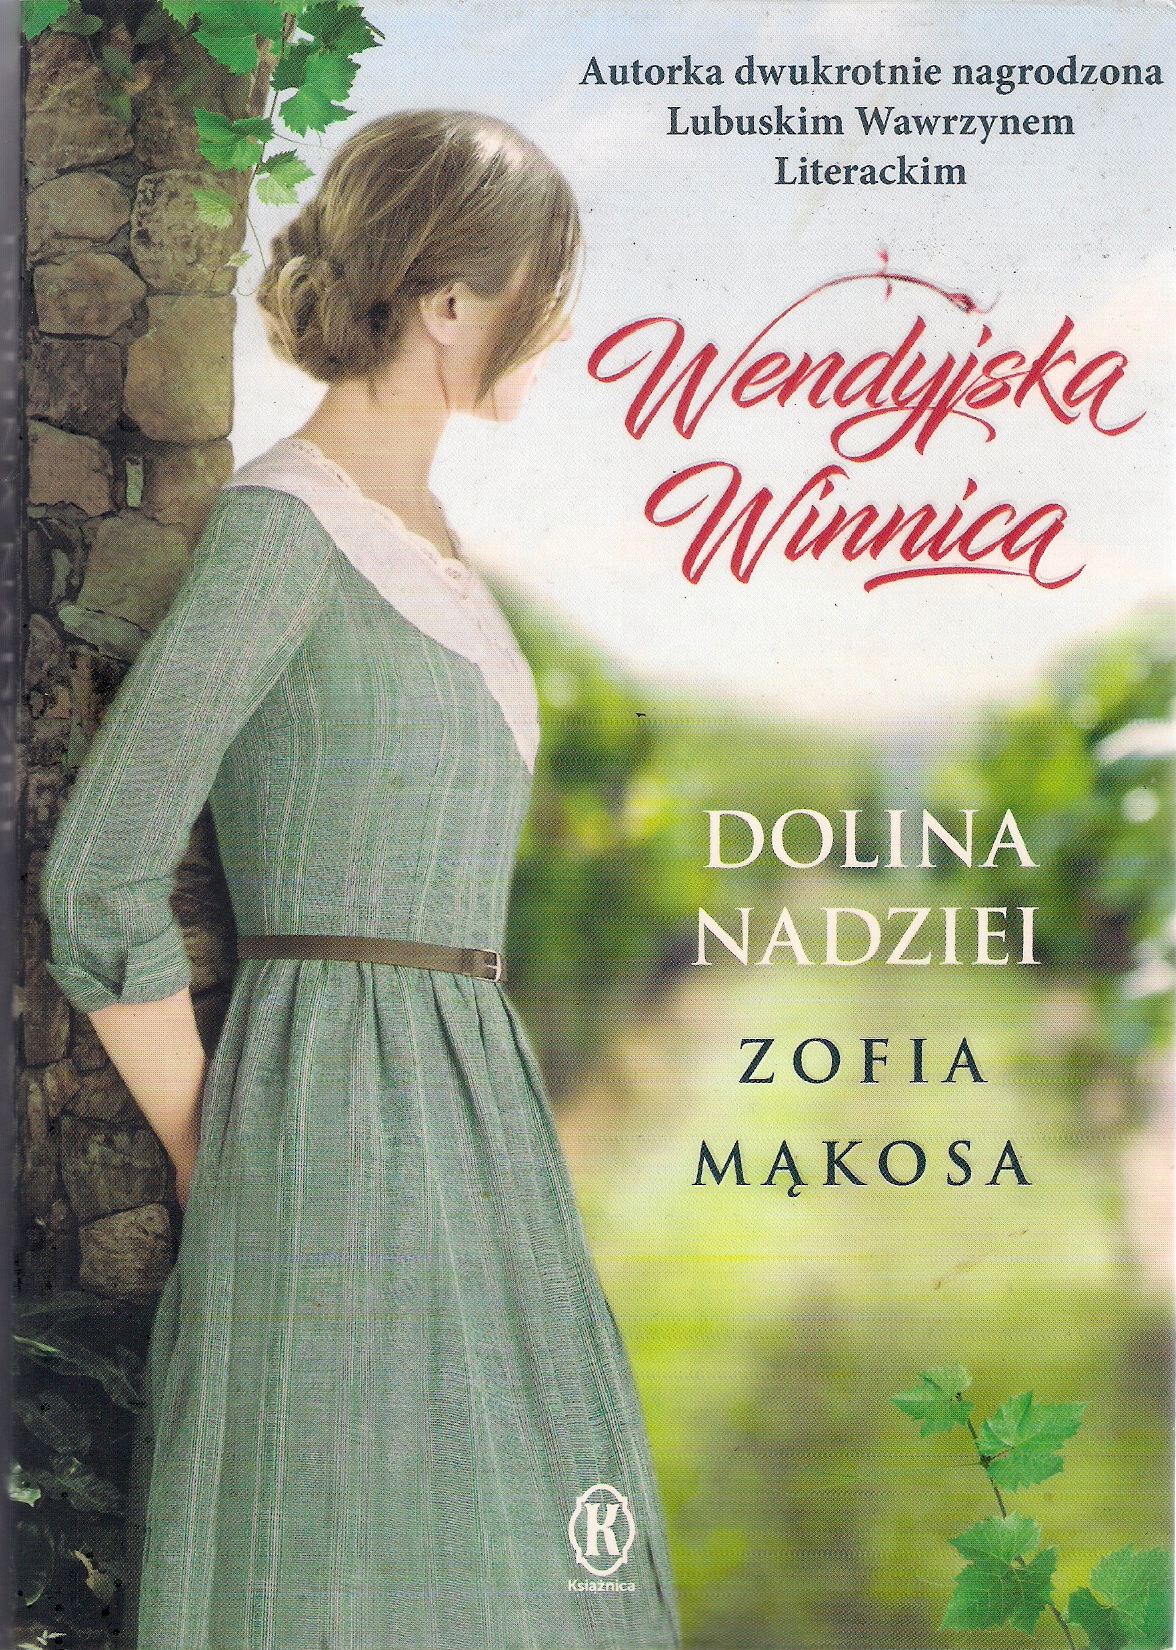 Zofia Mąkosa, „Dolina nadziei”, część trzecia cyklu „Wendyjska winnica”, Poznań 2020, 432 s.